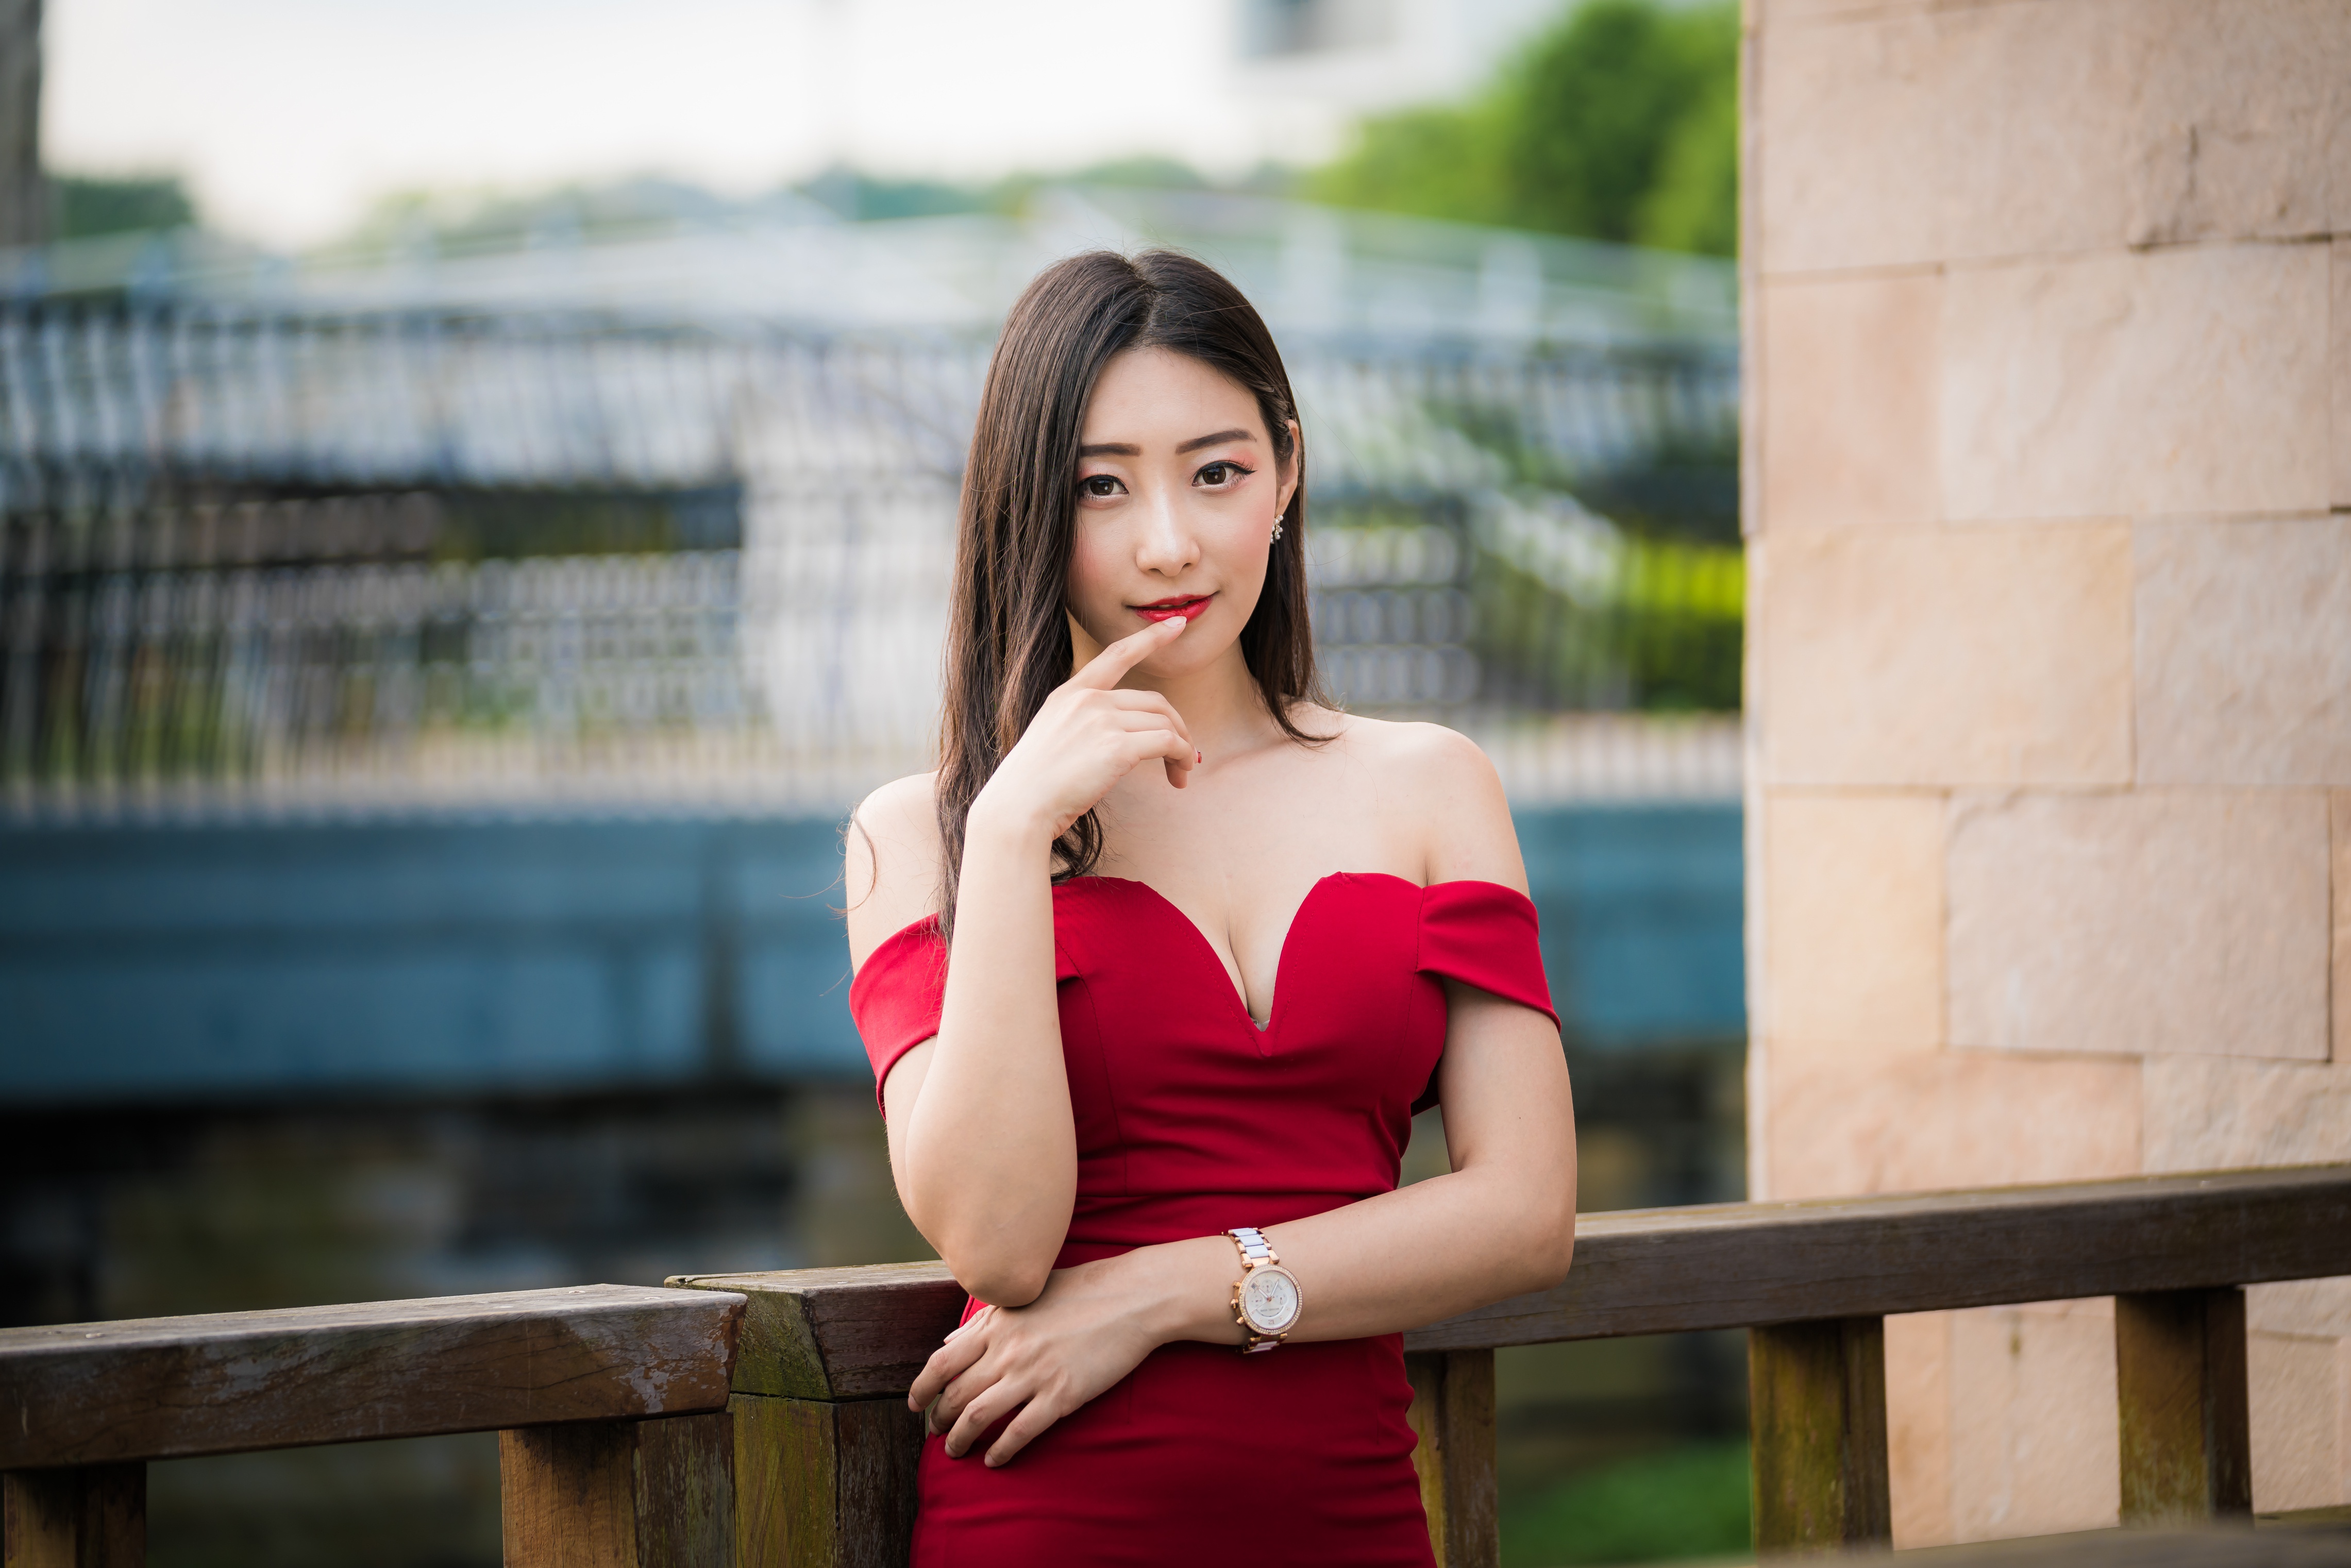 Asian Women Model Railings Red Dress Depth Of Field Red Lipstick Long Hair Brunette Wristwatch Earri 4562x3043